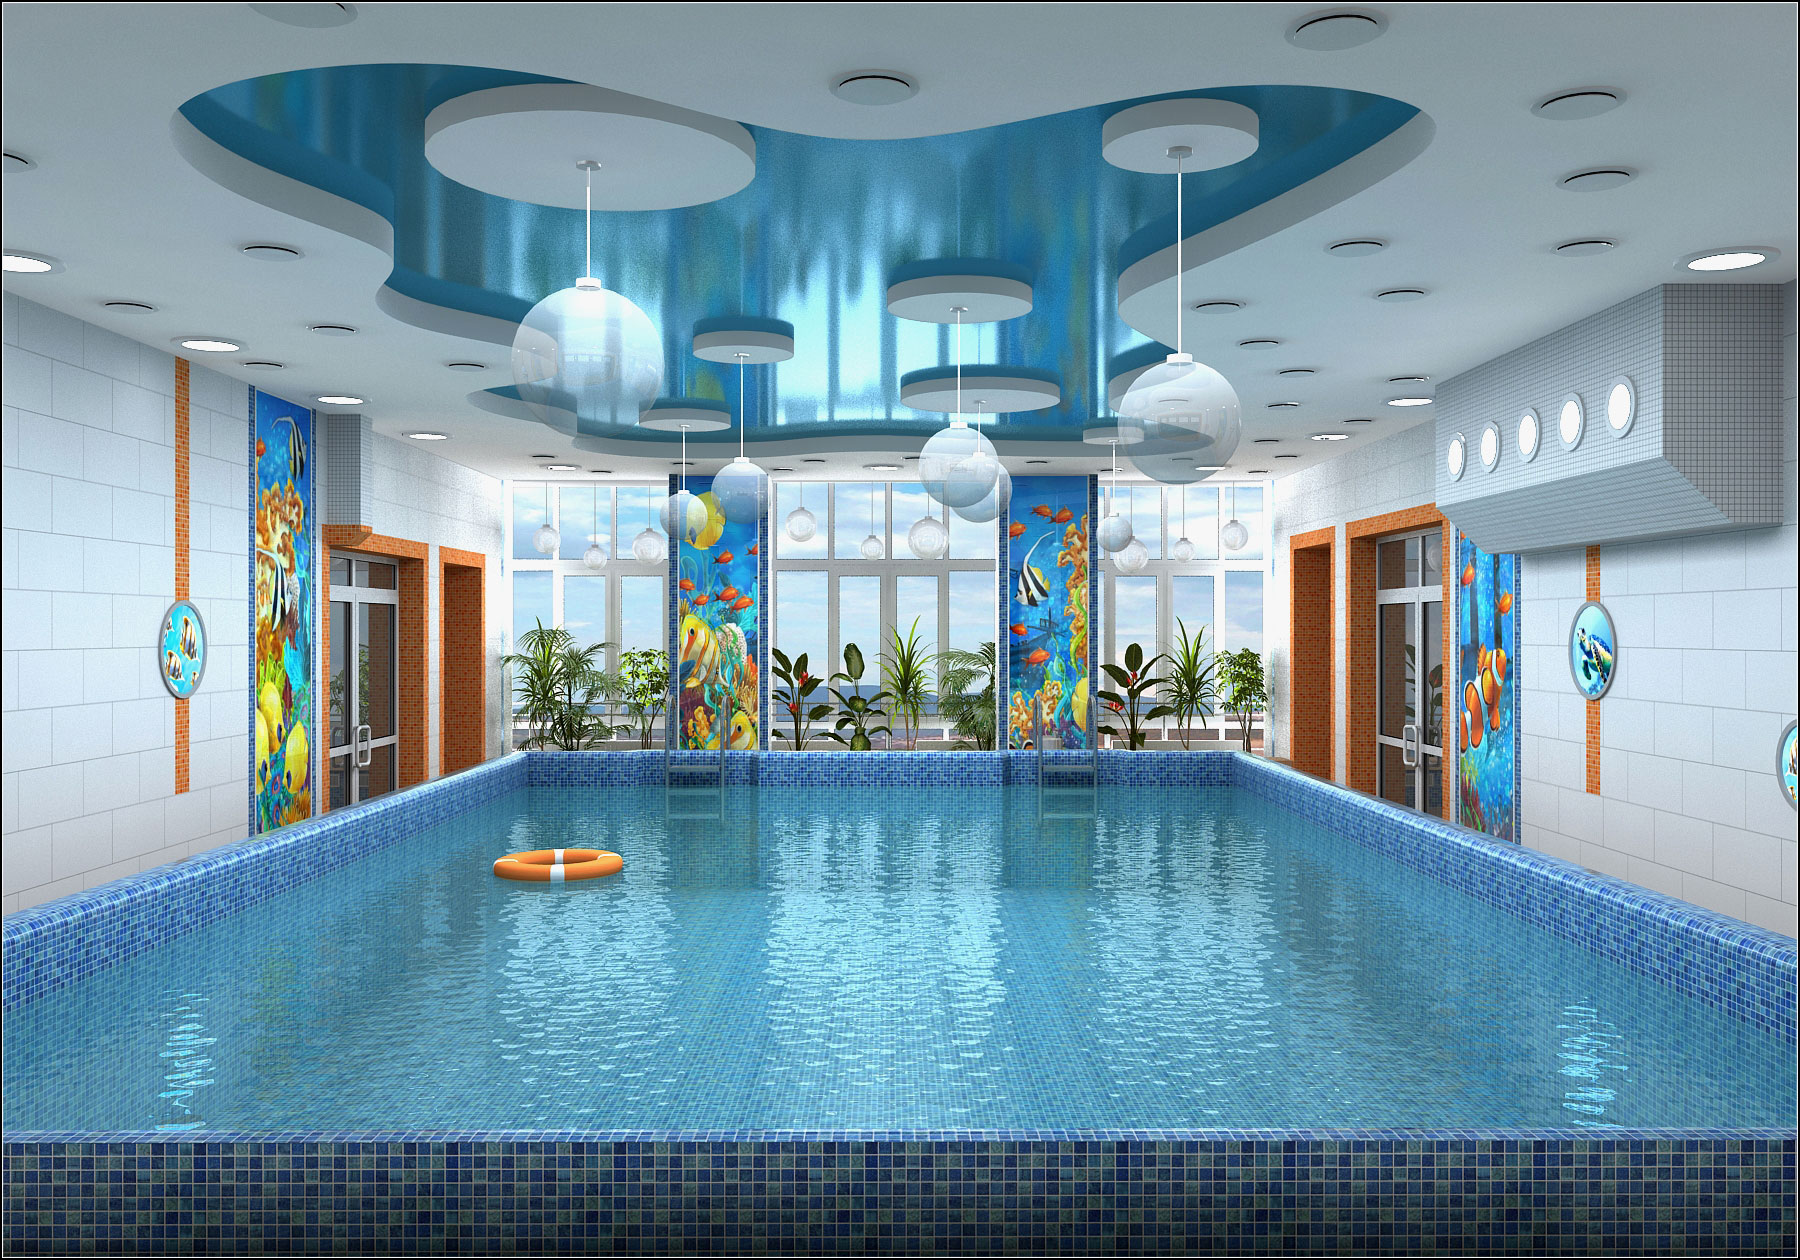 Projet d'aménagement intérieur d'une piscine pour enfants à Tchernihiv dans 3d max vray 1.5 image